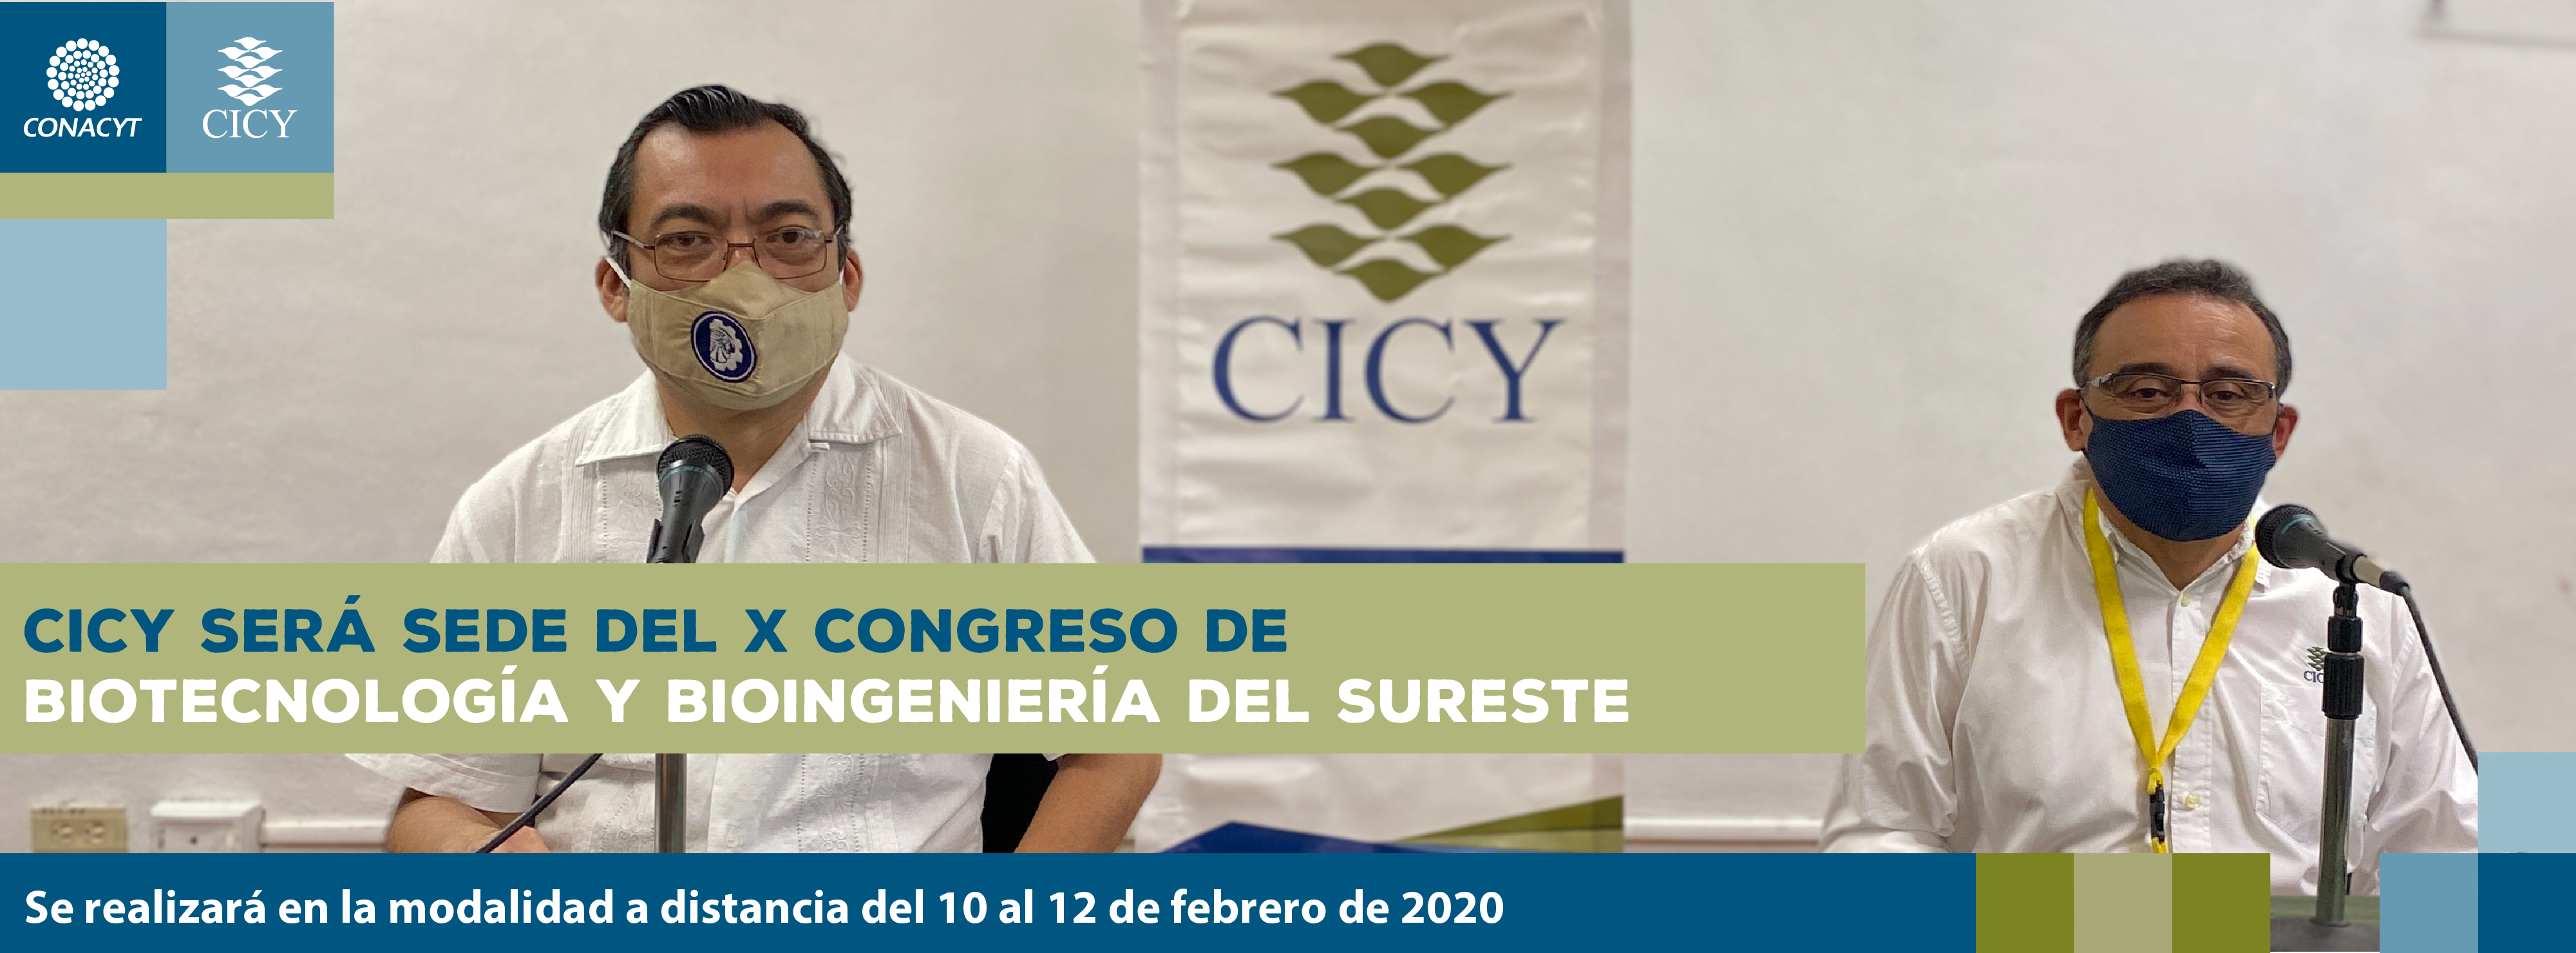 CICY será sede del X Congreso de Biotecnología y Bioingeniería del Sureste